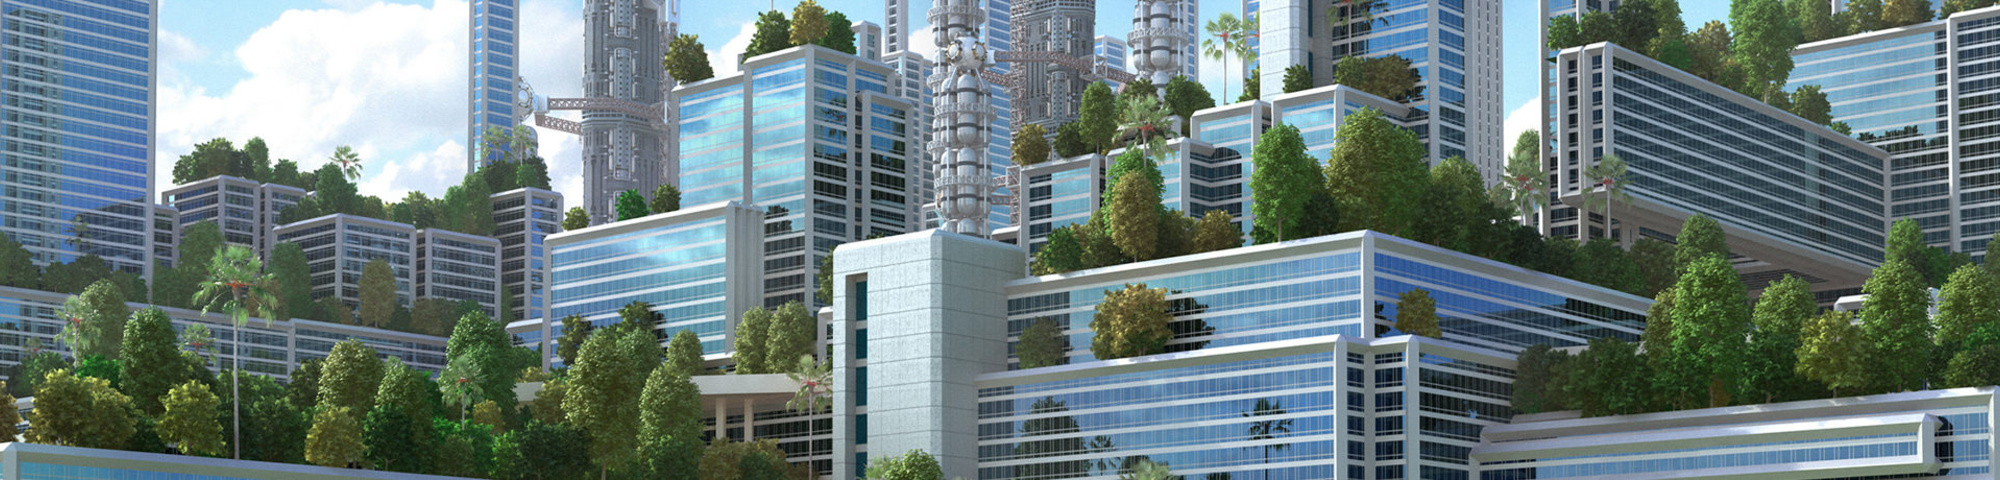 Des arbres urbains pour l’avenir